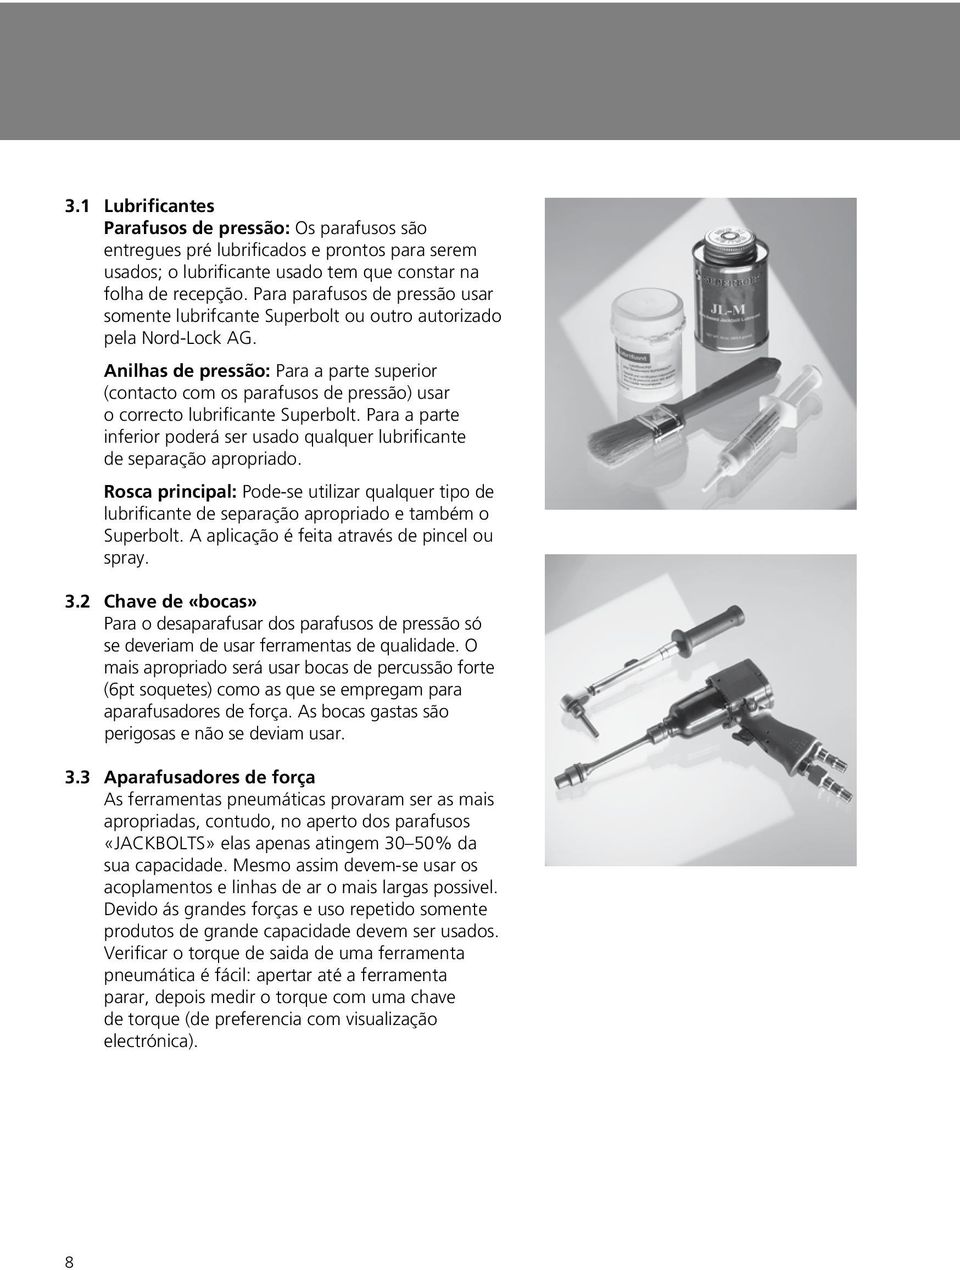 Para parafusos de pressão usar somente lubrifcante Superbolt ou outro autorizado pela Nord-Lock AG.